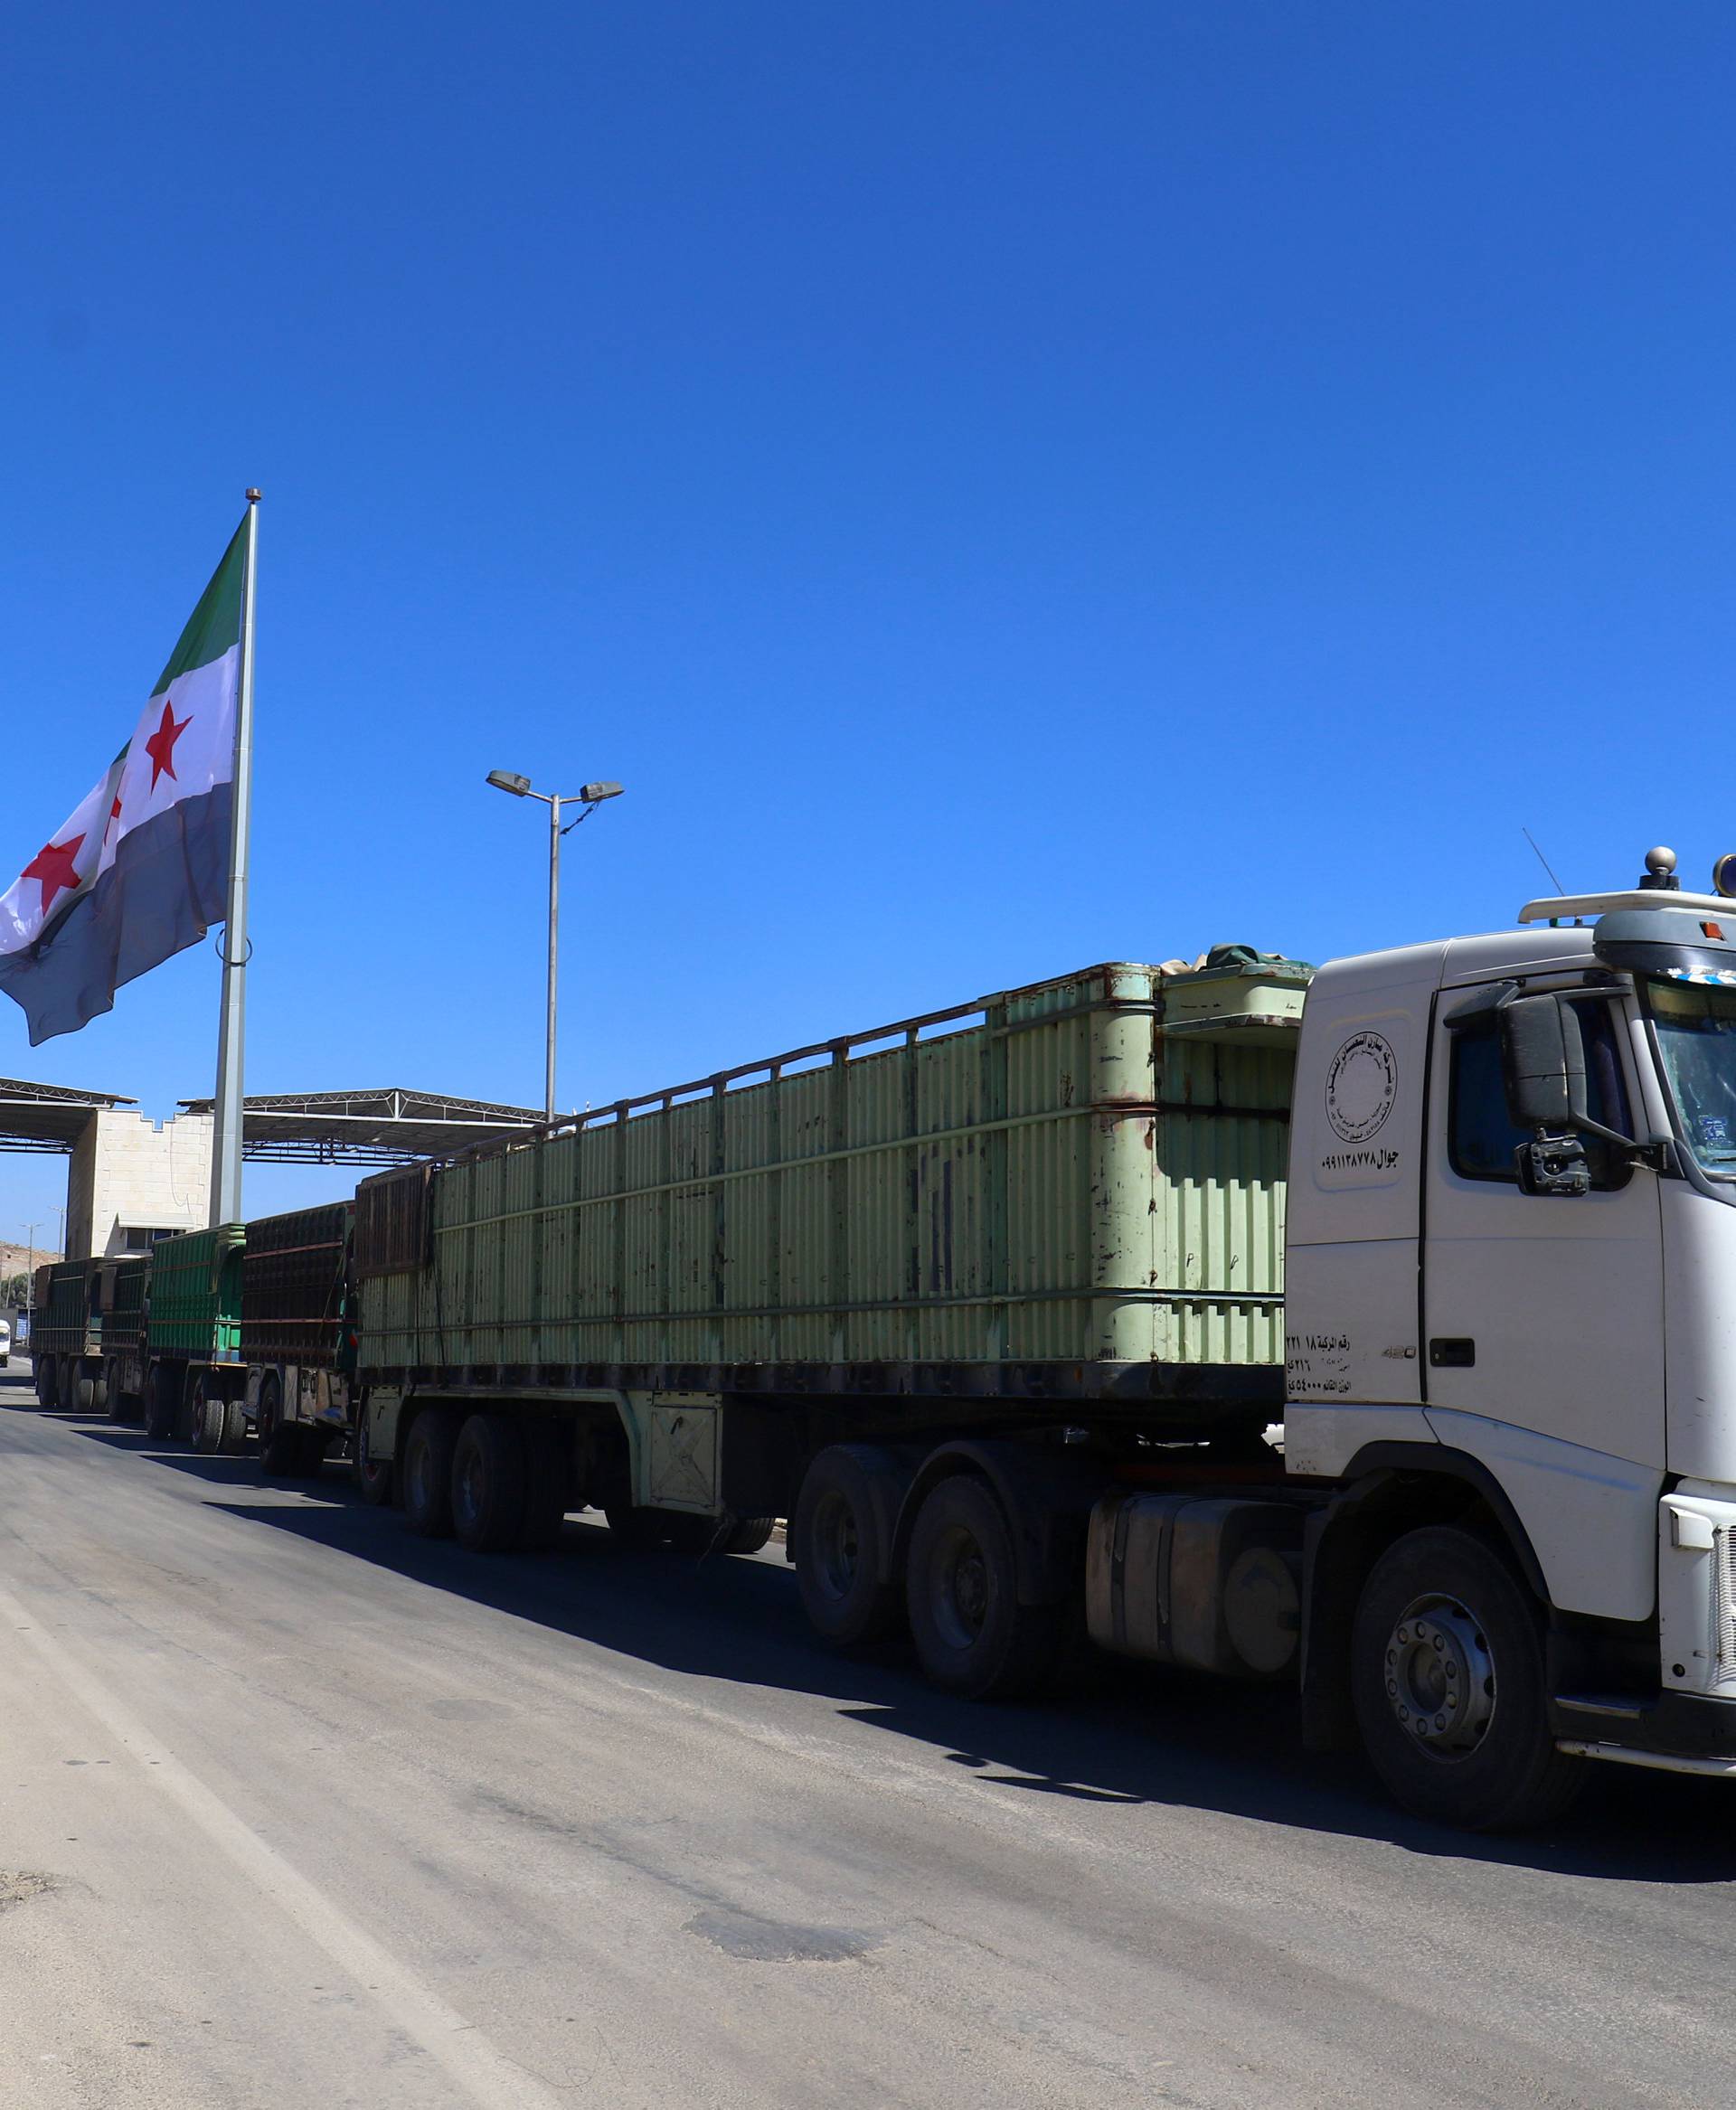 A Free Syrian Army flag flies at Bab al-Hawa crossing point in Syria